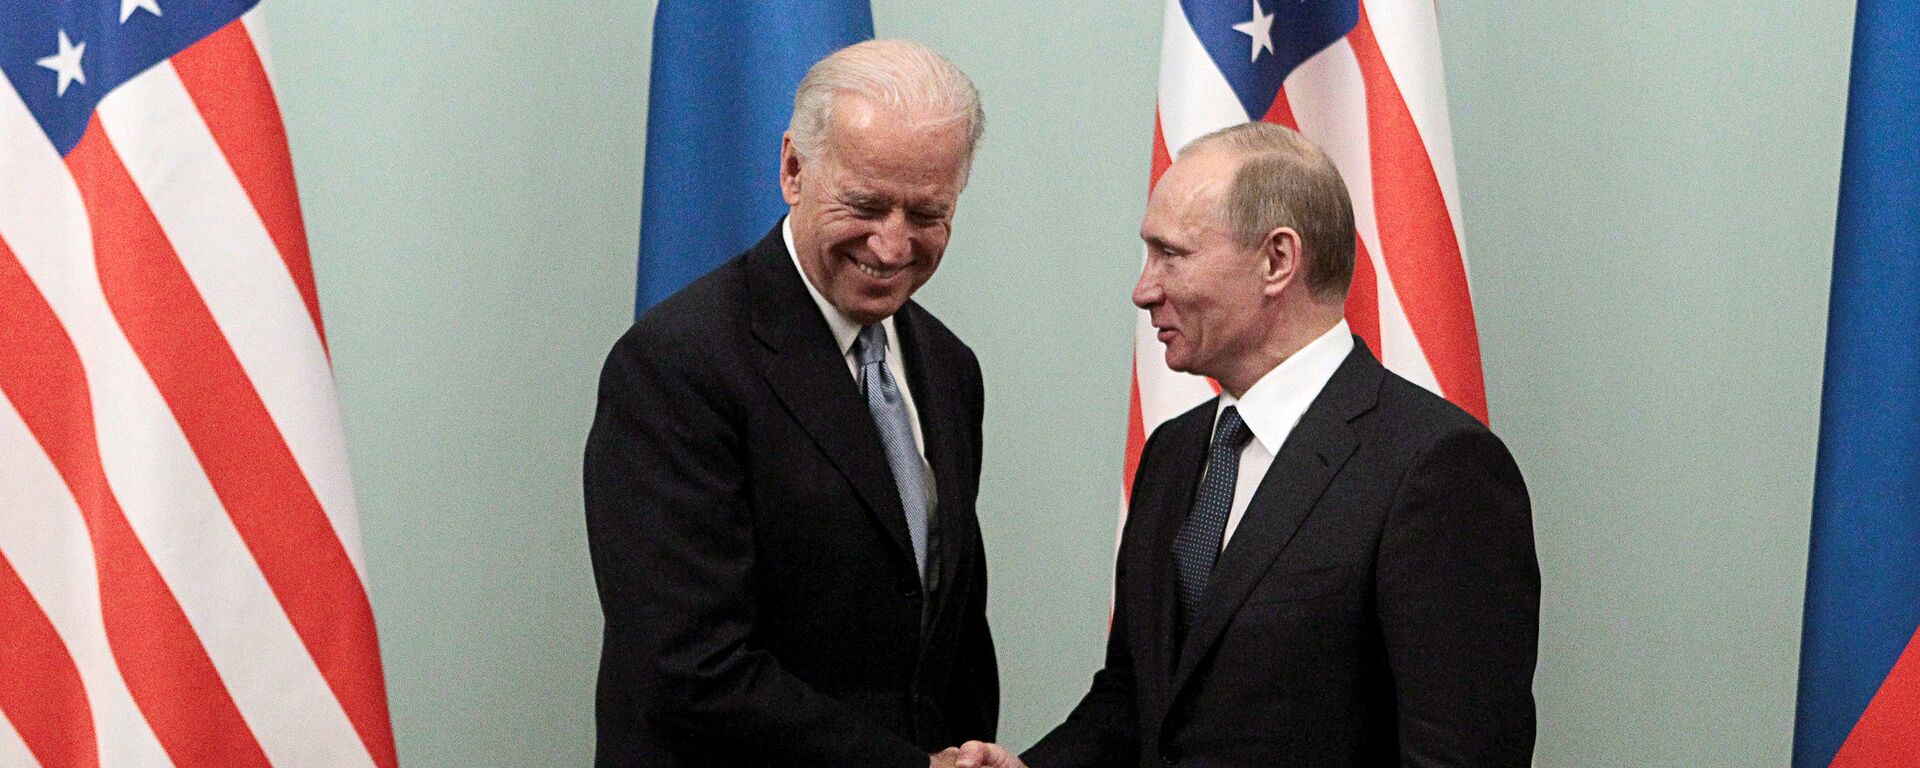 Rusya Devlet Başkanı Vladimir Putin ve ABD Başkanı Joe Biden - Sputnik Türkiye, 1920, 25.05.2021